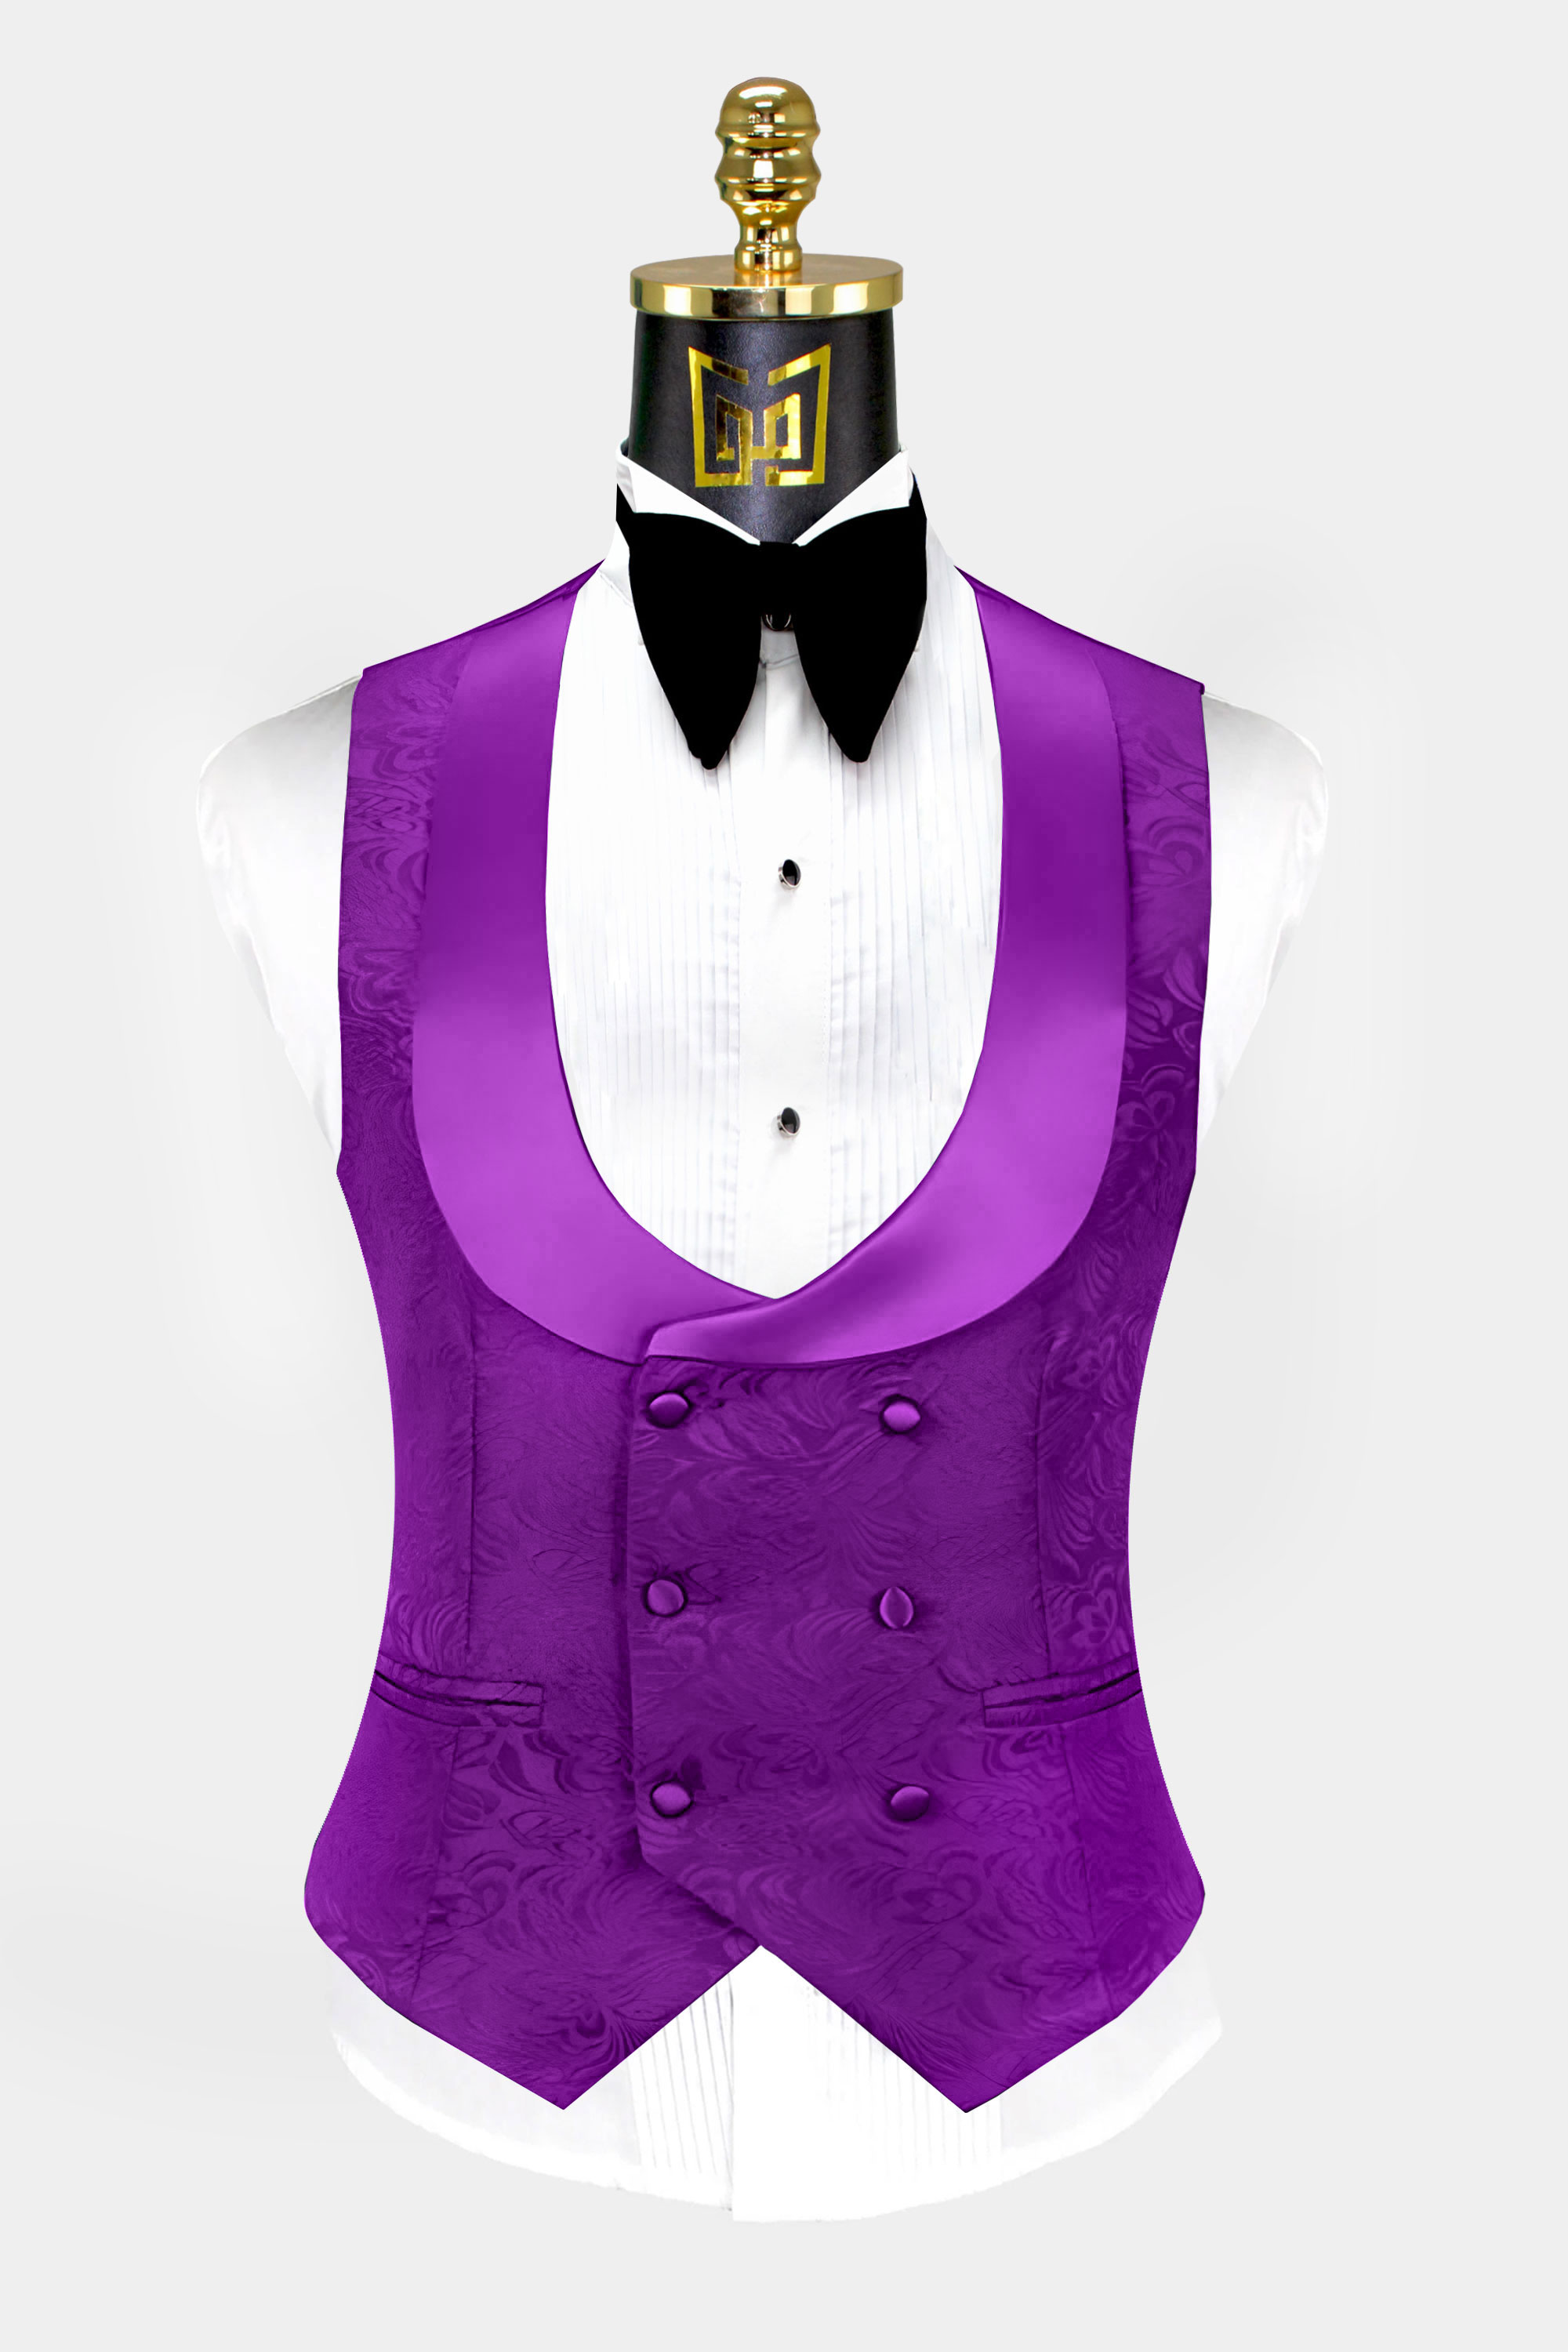 Violet-Purple-Tuxedo-Vest-Wedding-Waistcoat-from-Gentlemansguru.com